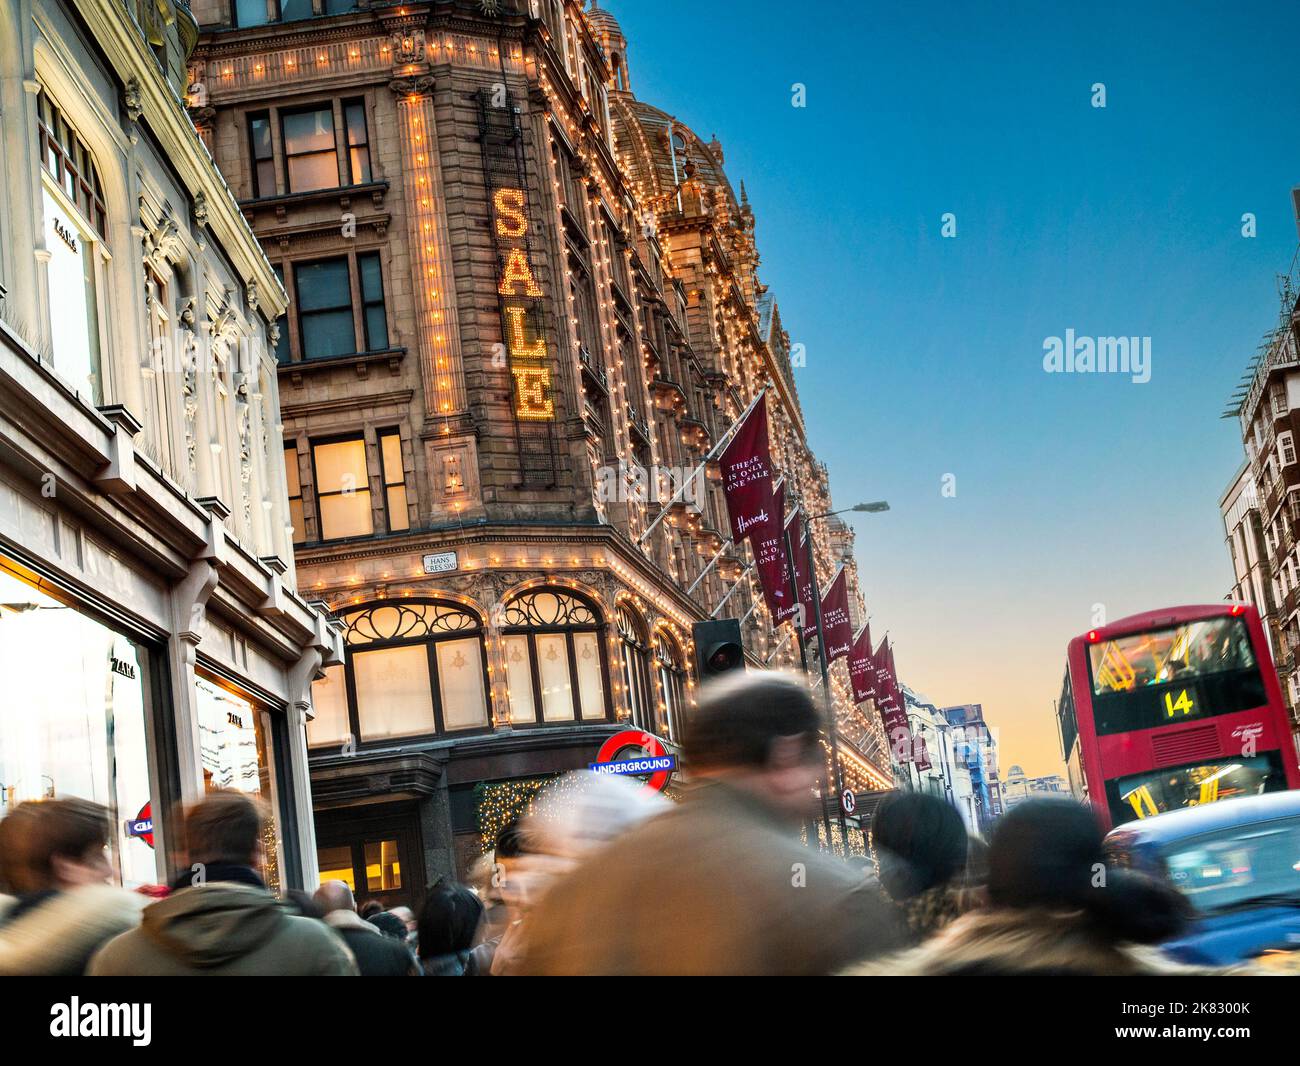 VERKAUFSSCHAREN HARRODS SALE SCHILD Harrods Kaufhaus in der Abenddämmerung mit beleuchteten 'Sale' Schild und Massen von Käufern Taxi und roten Bus Knightsbridge London SW1 Stockfoto